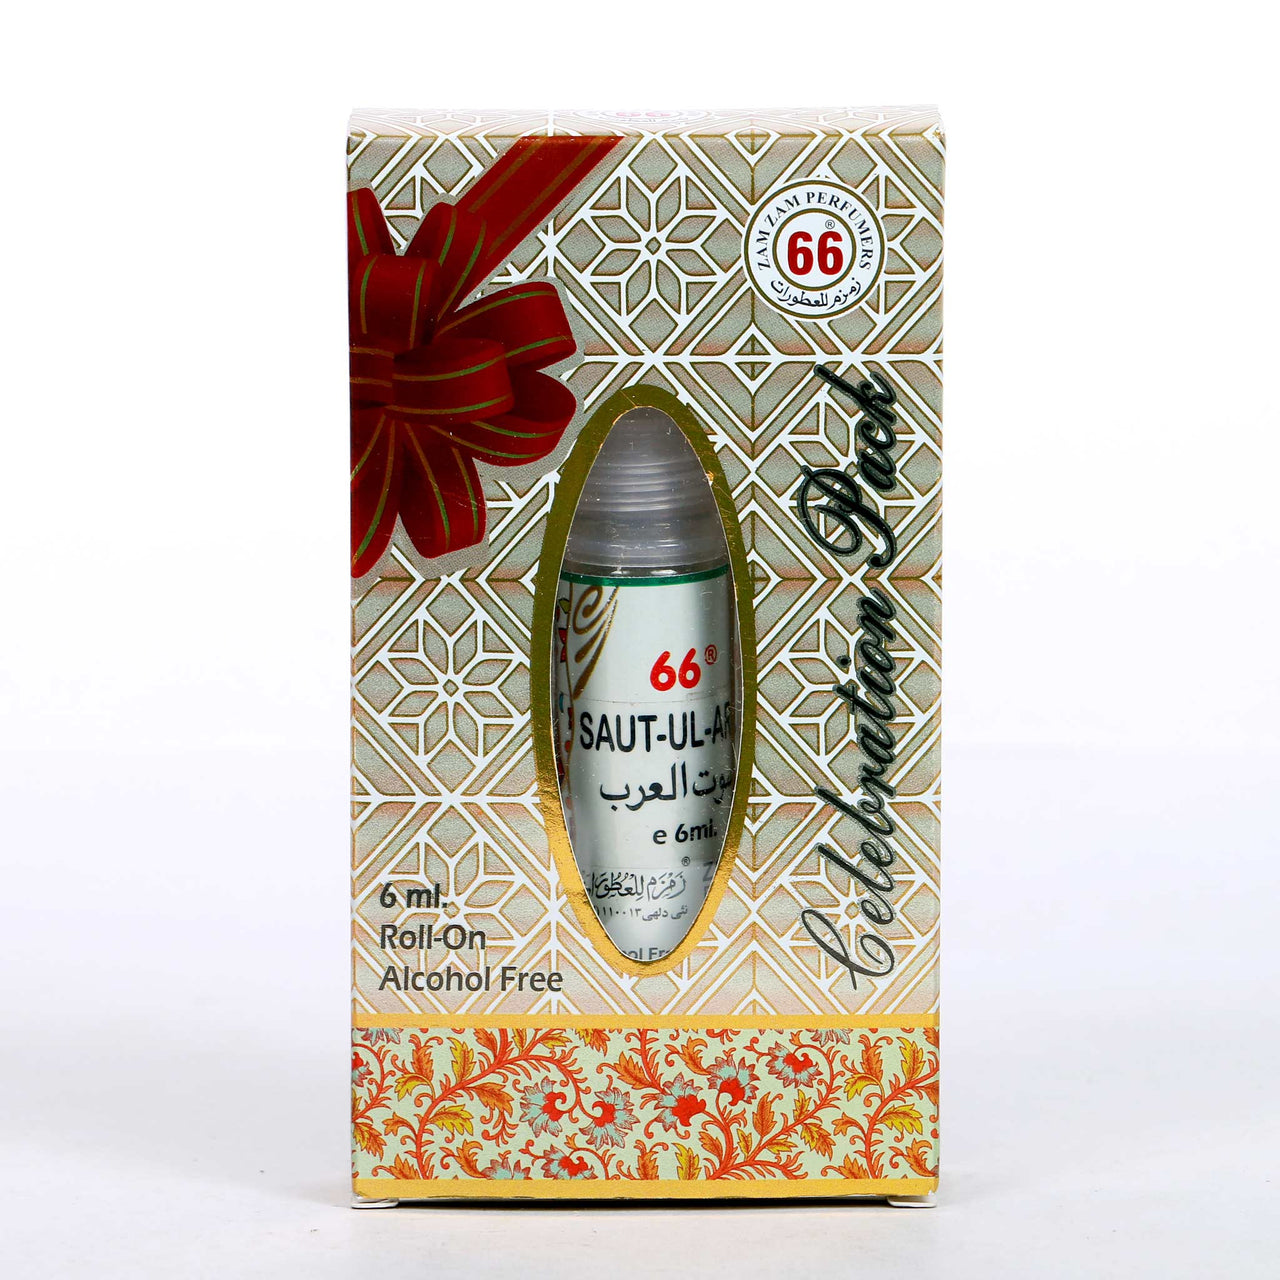 Saut ul Arab Attar Perfume